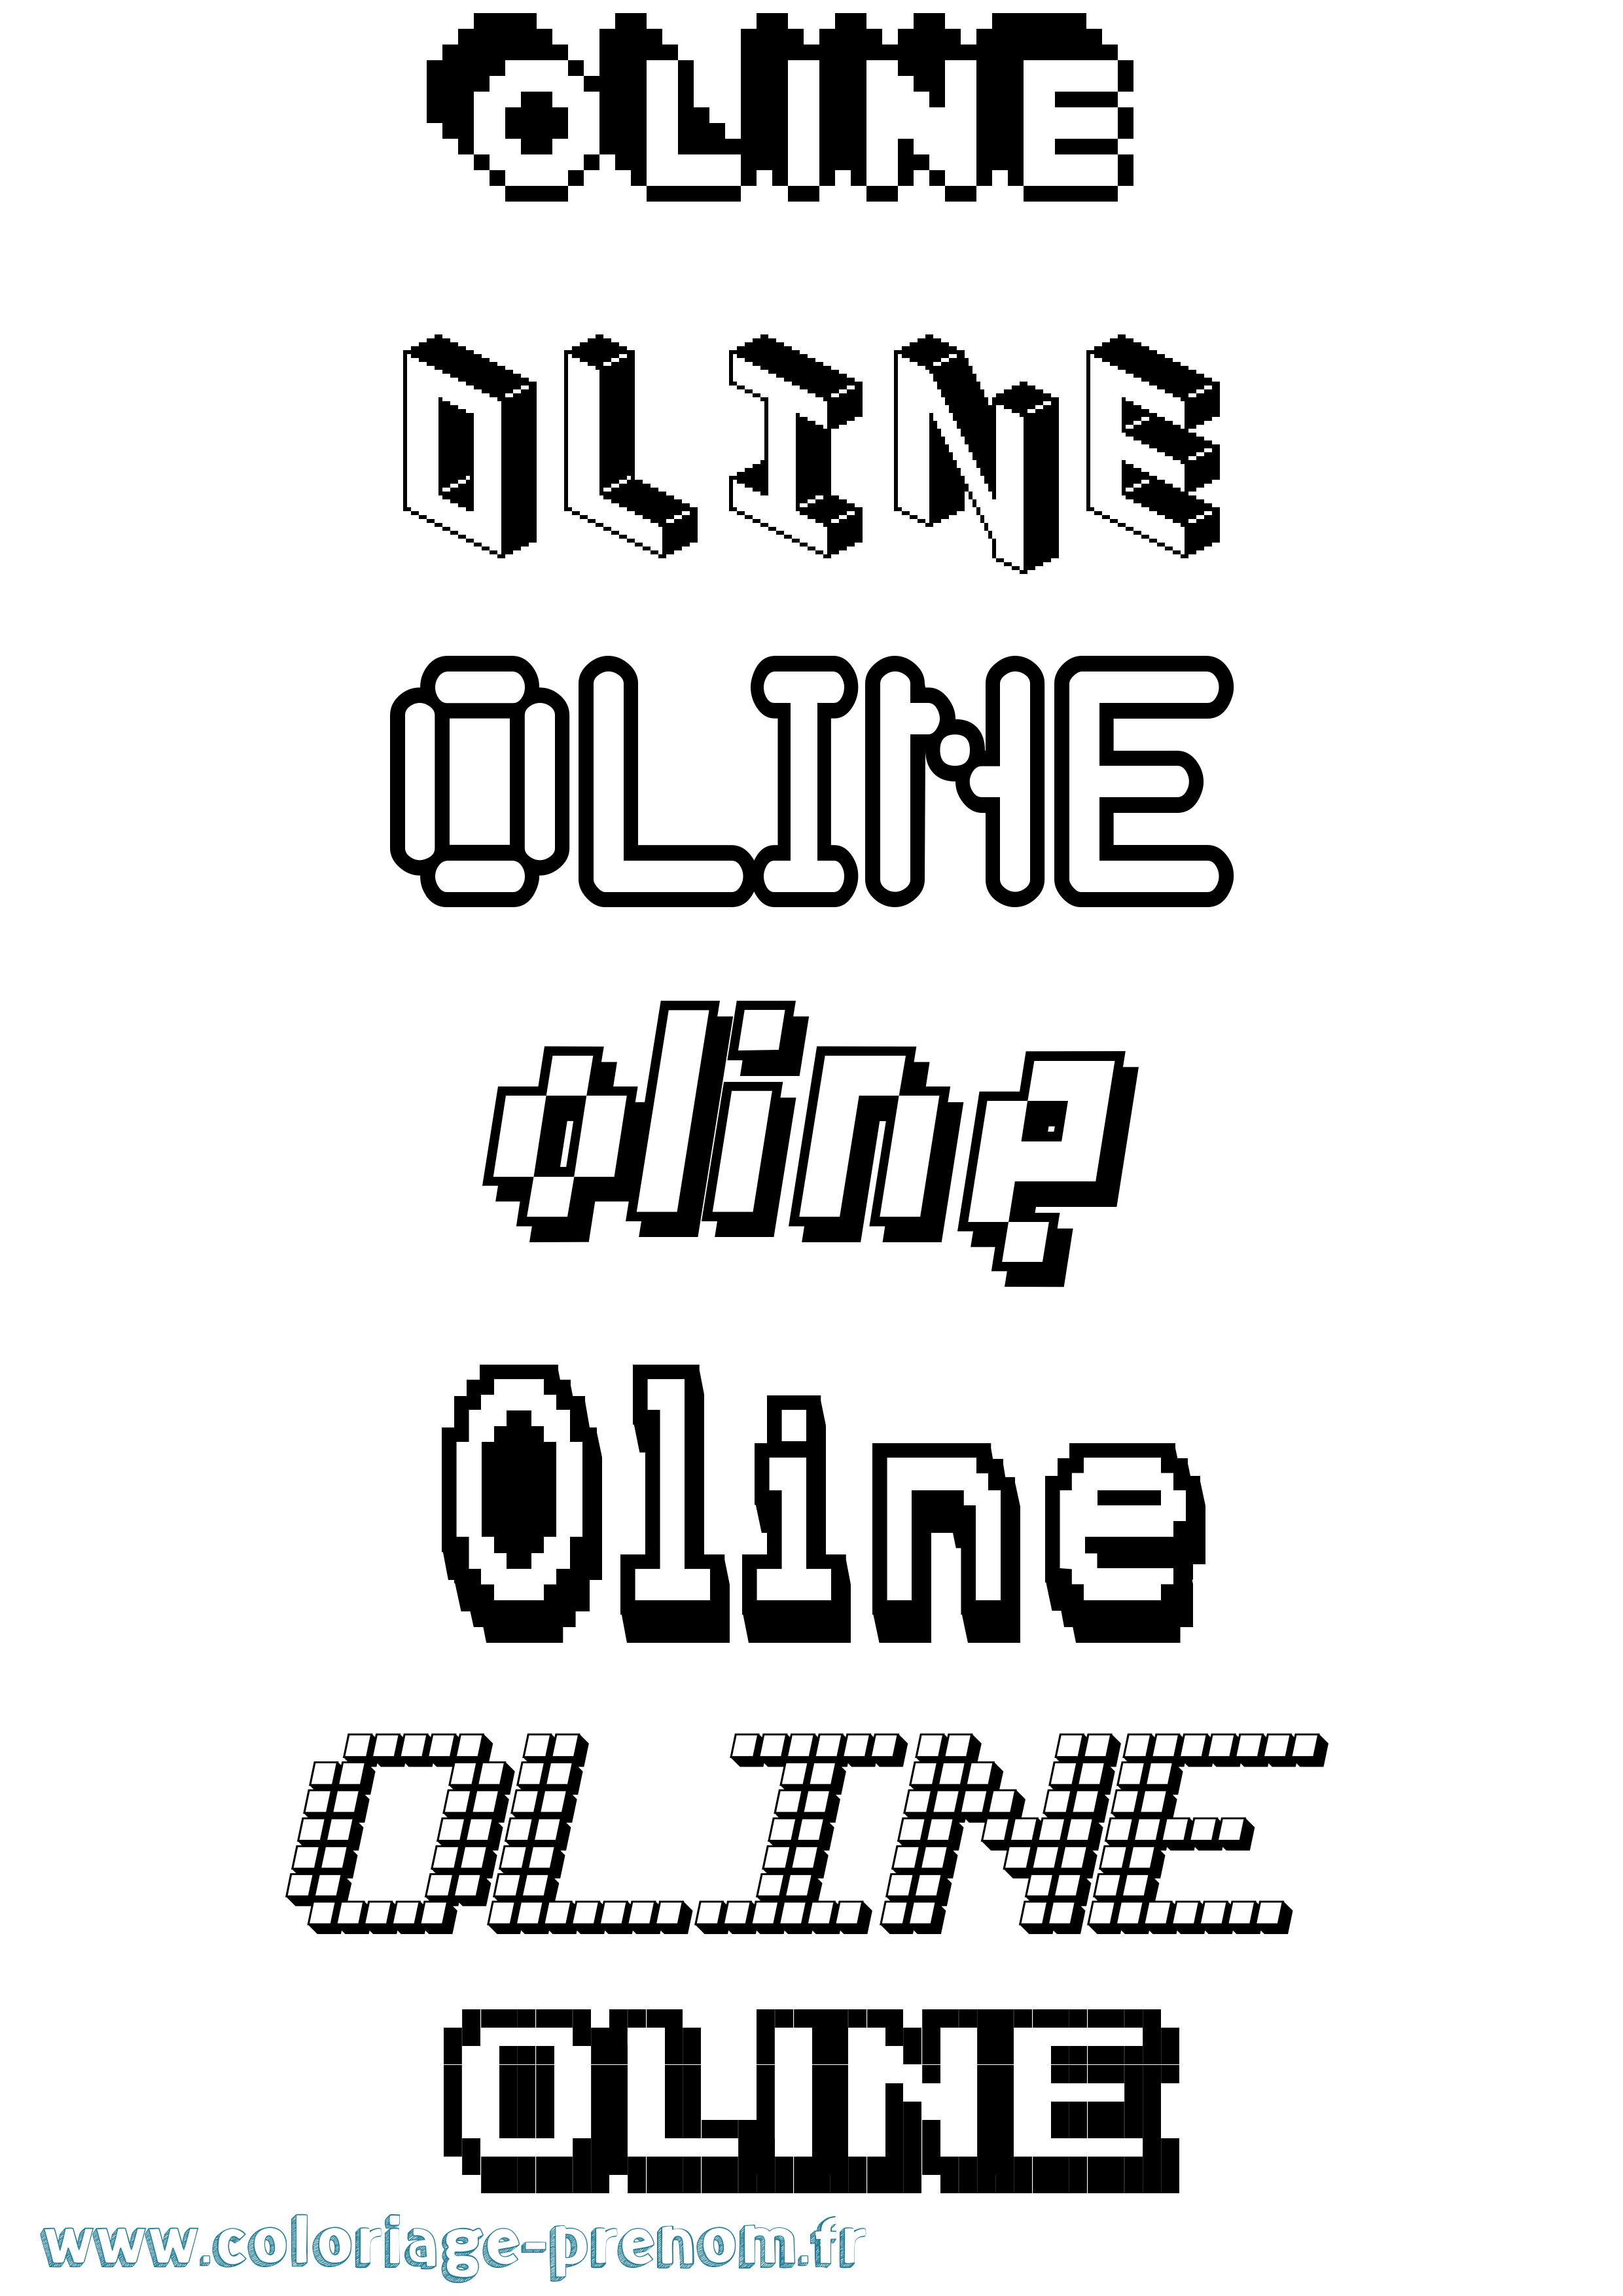 Coloriage prénom Oline Pixel